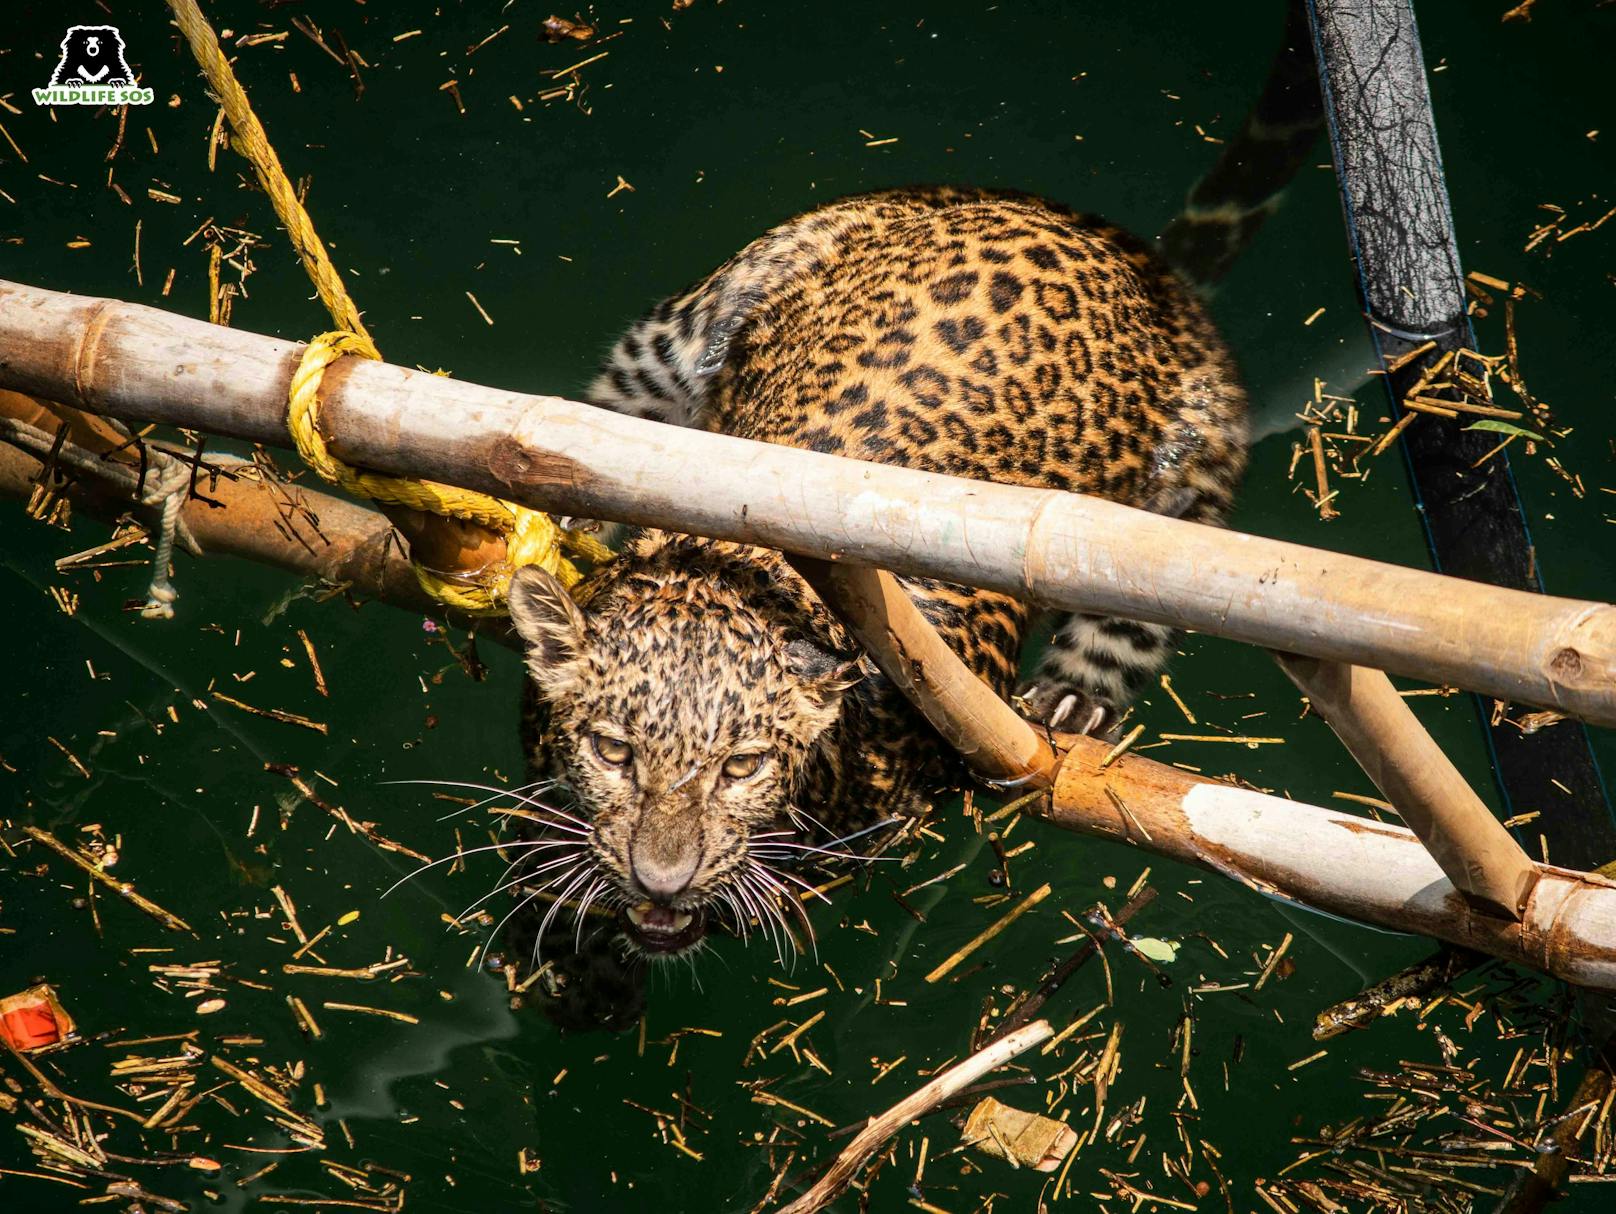 Bevor die Tierretter von "Wildlife SOS" eintraf, wurde zunächst eine Leiter in den Brunnen geschoben, damit sich der Leopard abstützen konnte. 